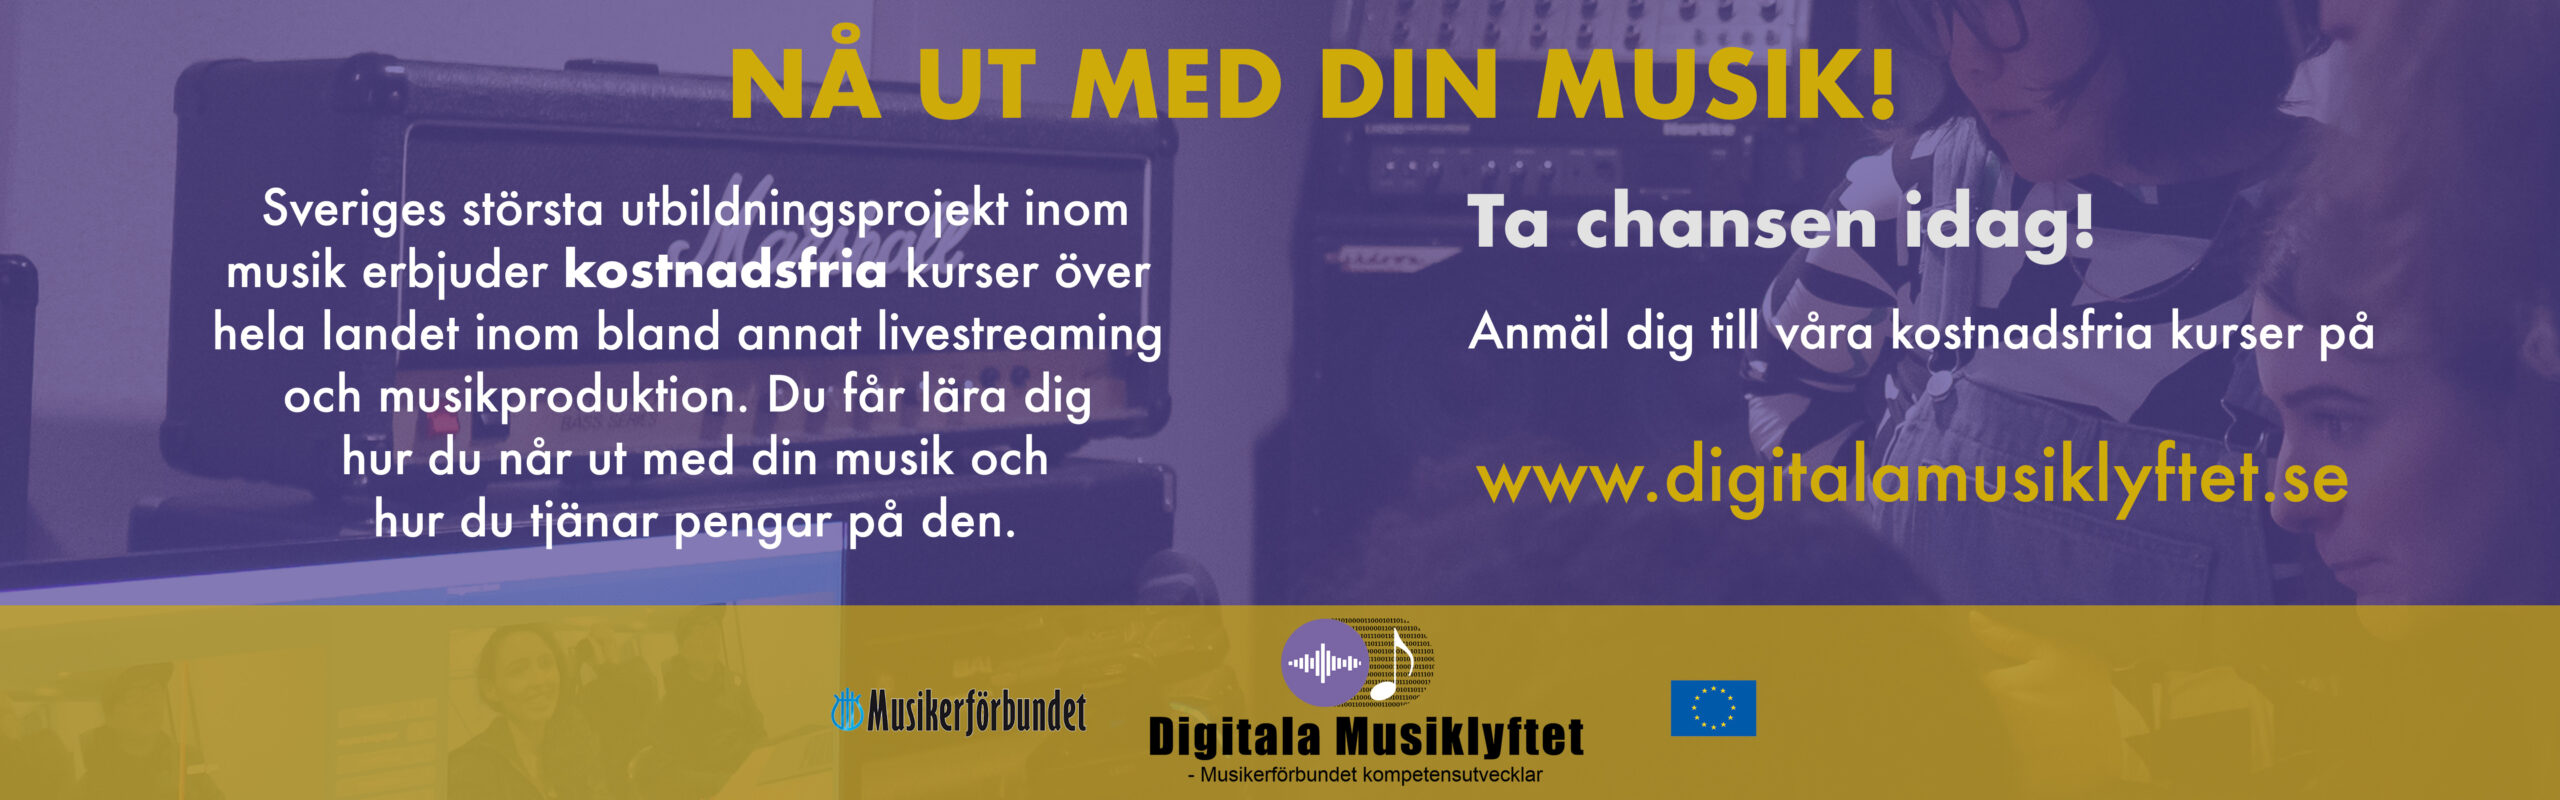 Annons: Digitala Musiklyftet